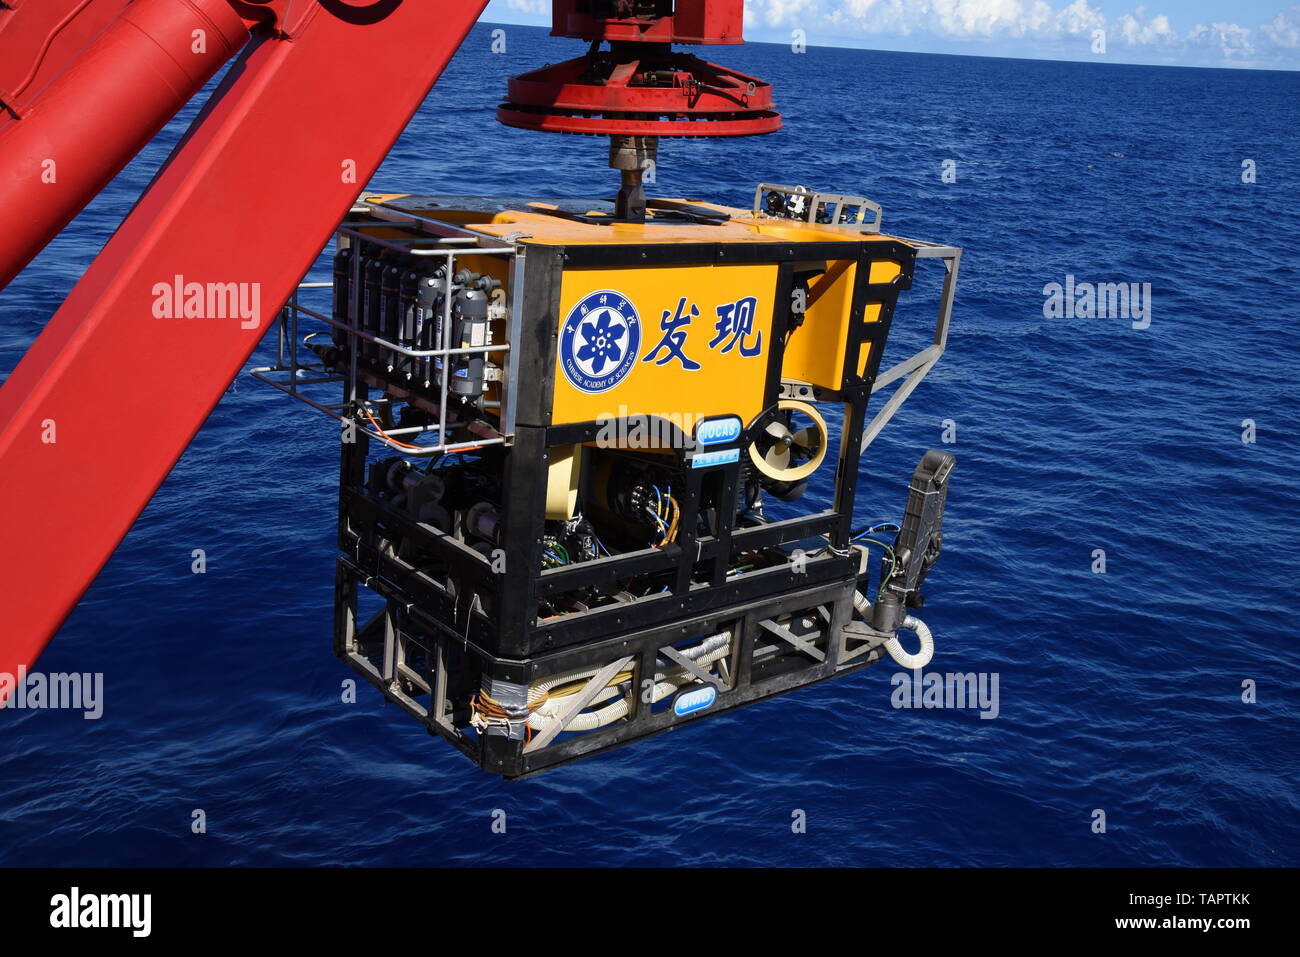 An Bord Kexue, Marianengraben. 27. Mai, 2019. Die Remote Operated Vehicle (ROV), Discovery, bereitet sich ins Meer tauchen im Süden der Marianengraben, 27. Mai 2019. China's Forschungsschiff KEXUE (Wissenschaft) am Montag begann eine Reihe von Seamounts im Süden der Marianengraben, der tiefsten Stelle der Erde zu erkunden. Die Remote Operated Vehicle (ROV), Discovery, getaucht in das Meer am Montag morgen Videos, Informationen und Proben, die von einem kleinen Seamount im Südwesten der gezielten Bereich zu sammeln. Credit: Zhang Xudong/Xinhua/Alamy leben Nachrichten Stockfoto